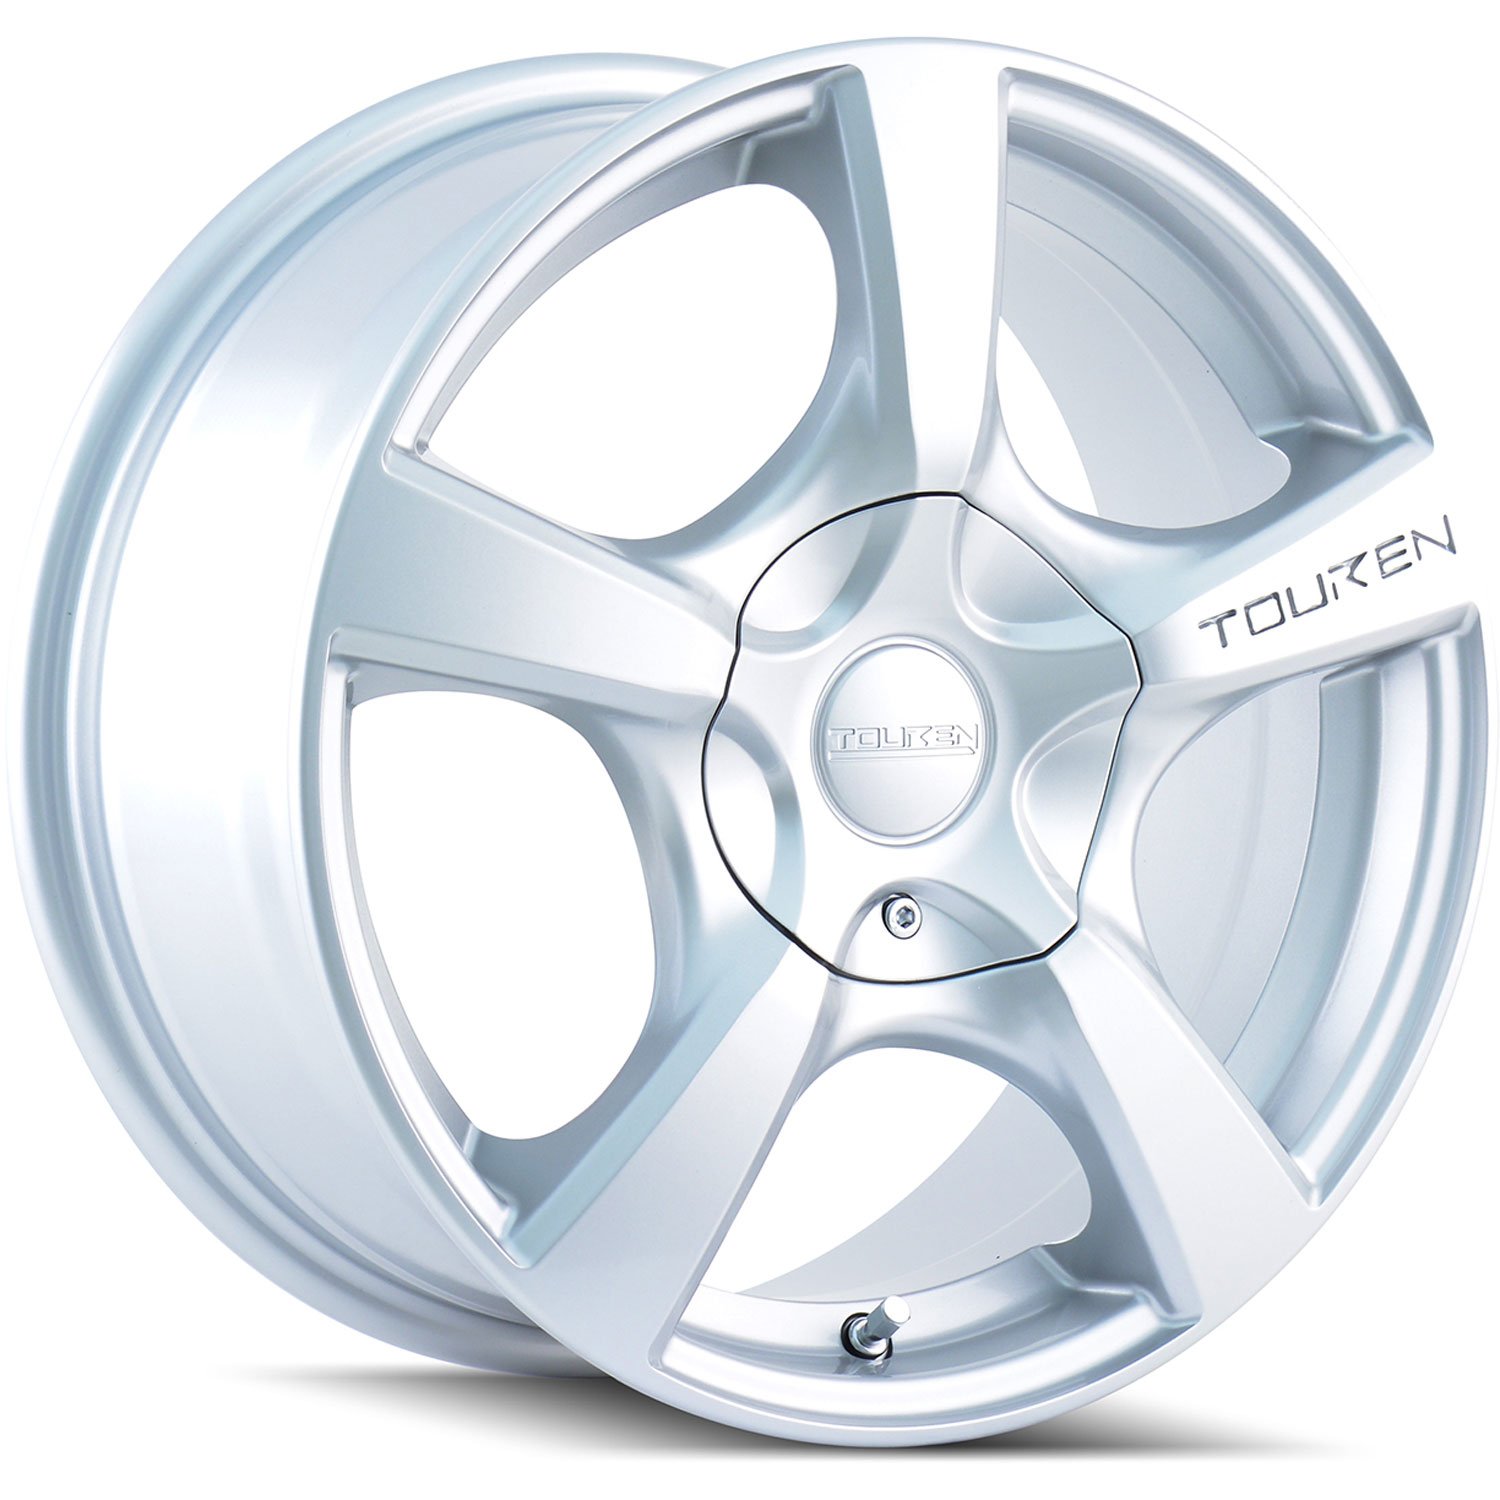 Touren TR9 Series Wheel Size: 19" x 8.5" Bolt Circle: 5 x 127mm